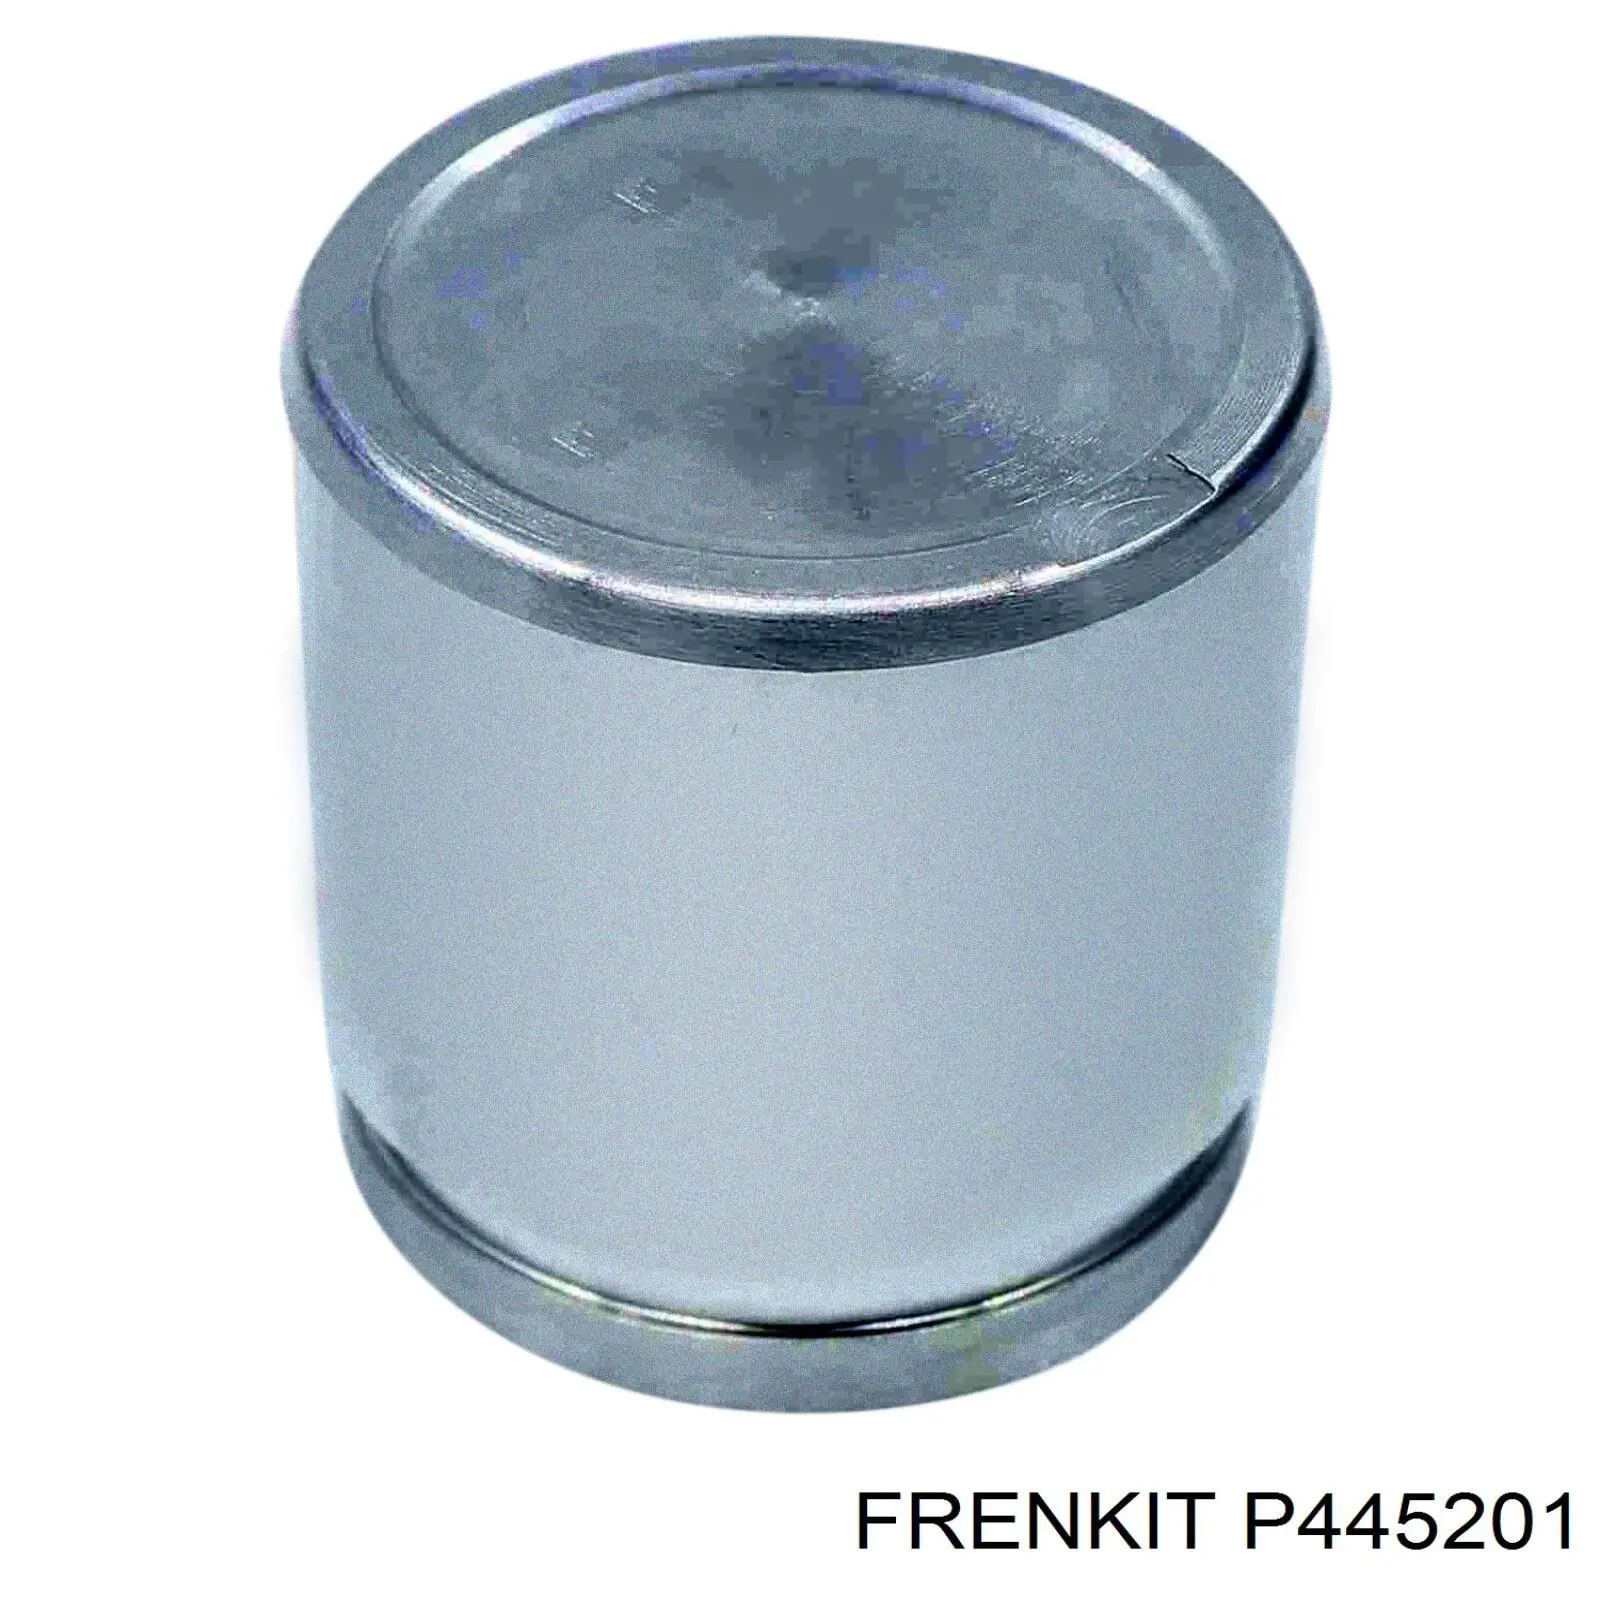 P445201 Frenkit поршень суппорта тормозного переднего